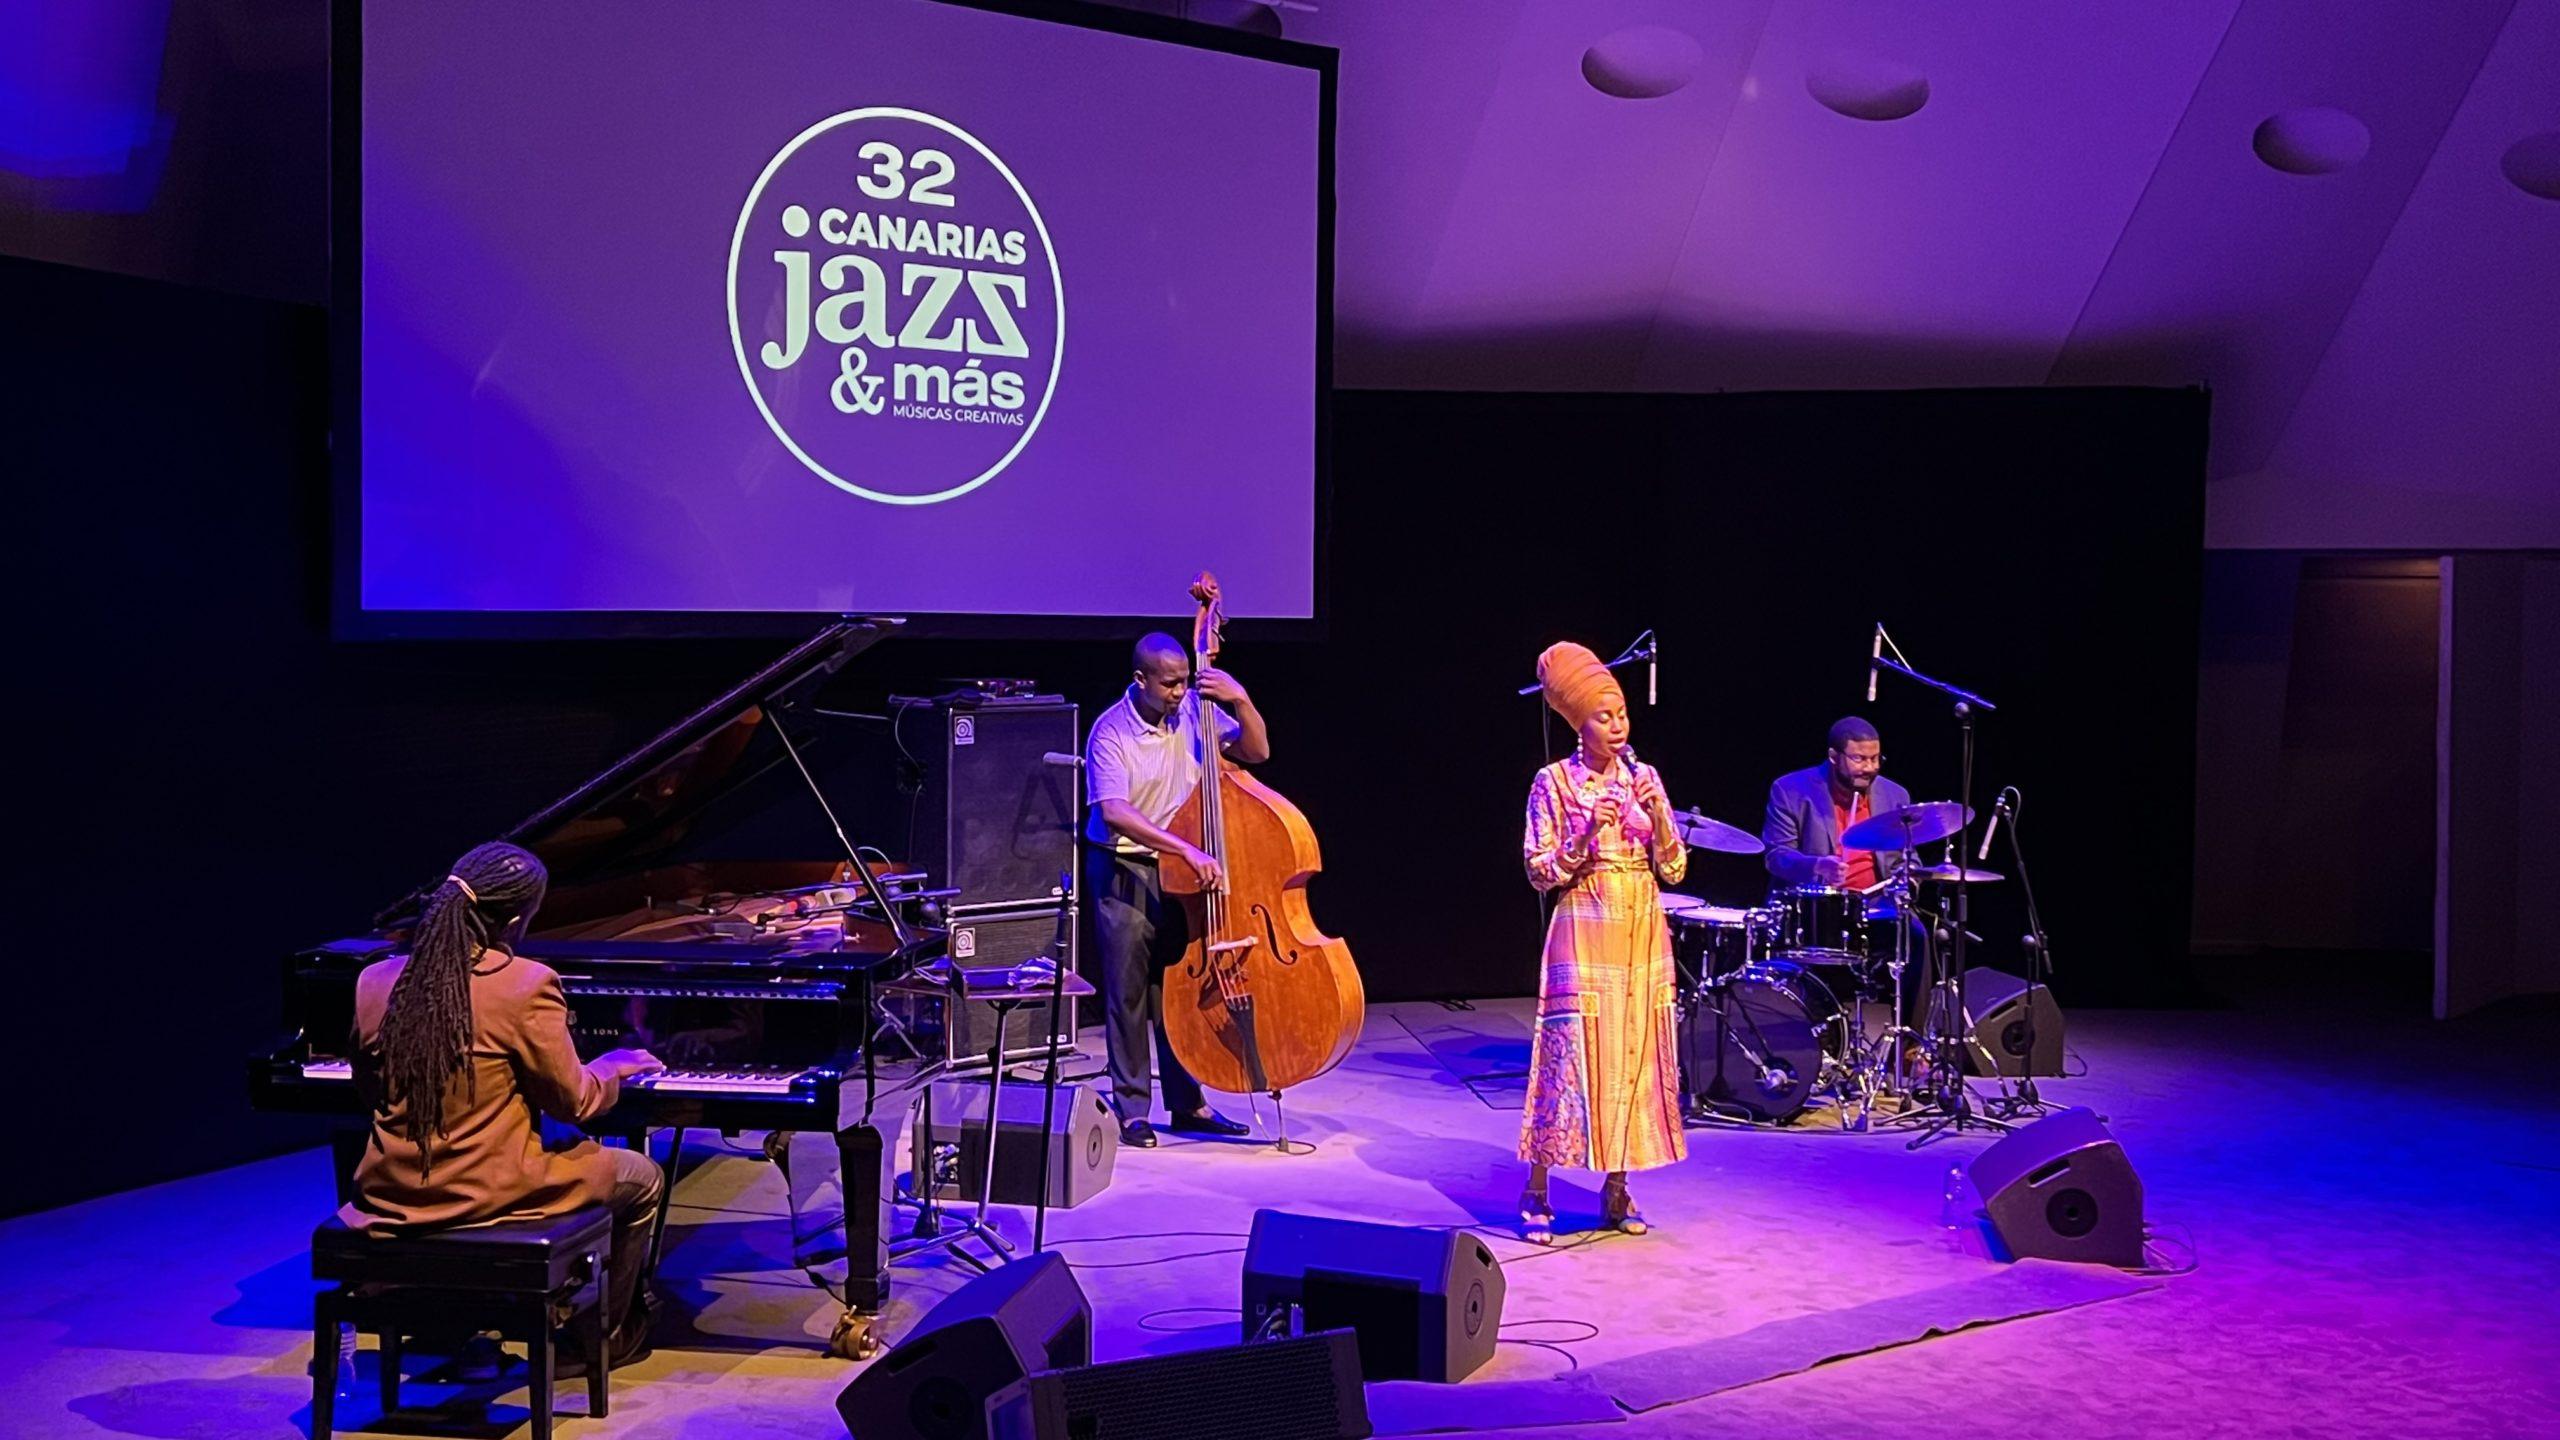 Jazzsängerin Jazzmeia Horn mit Band auf der Bühne im Auditorium de Tenerife